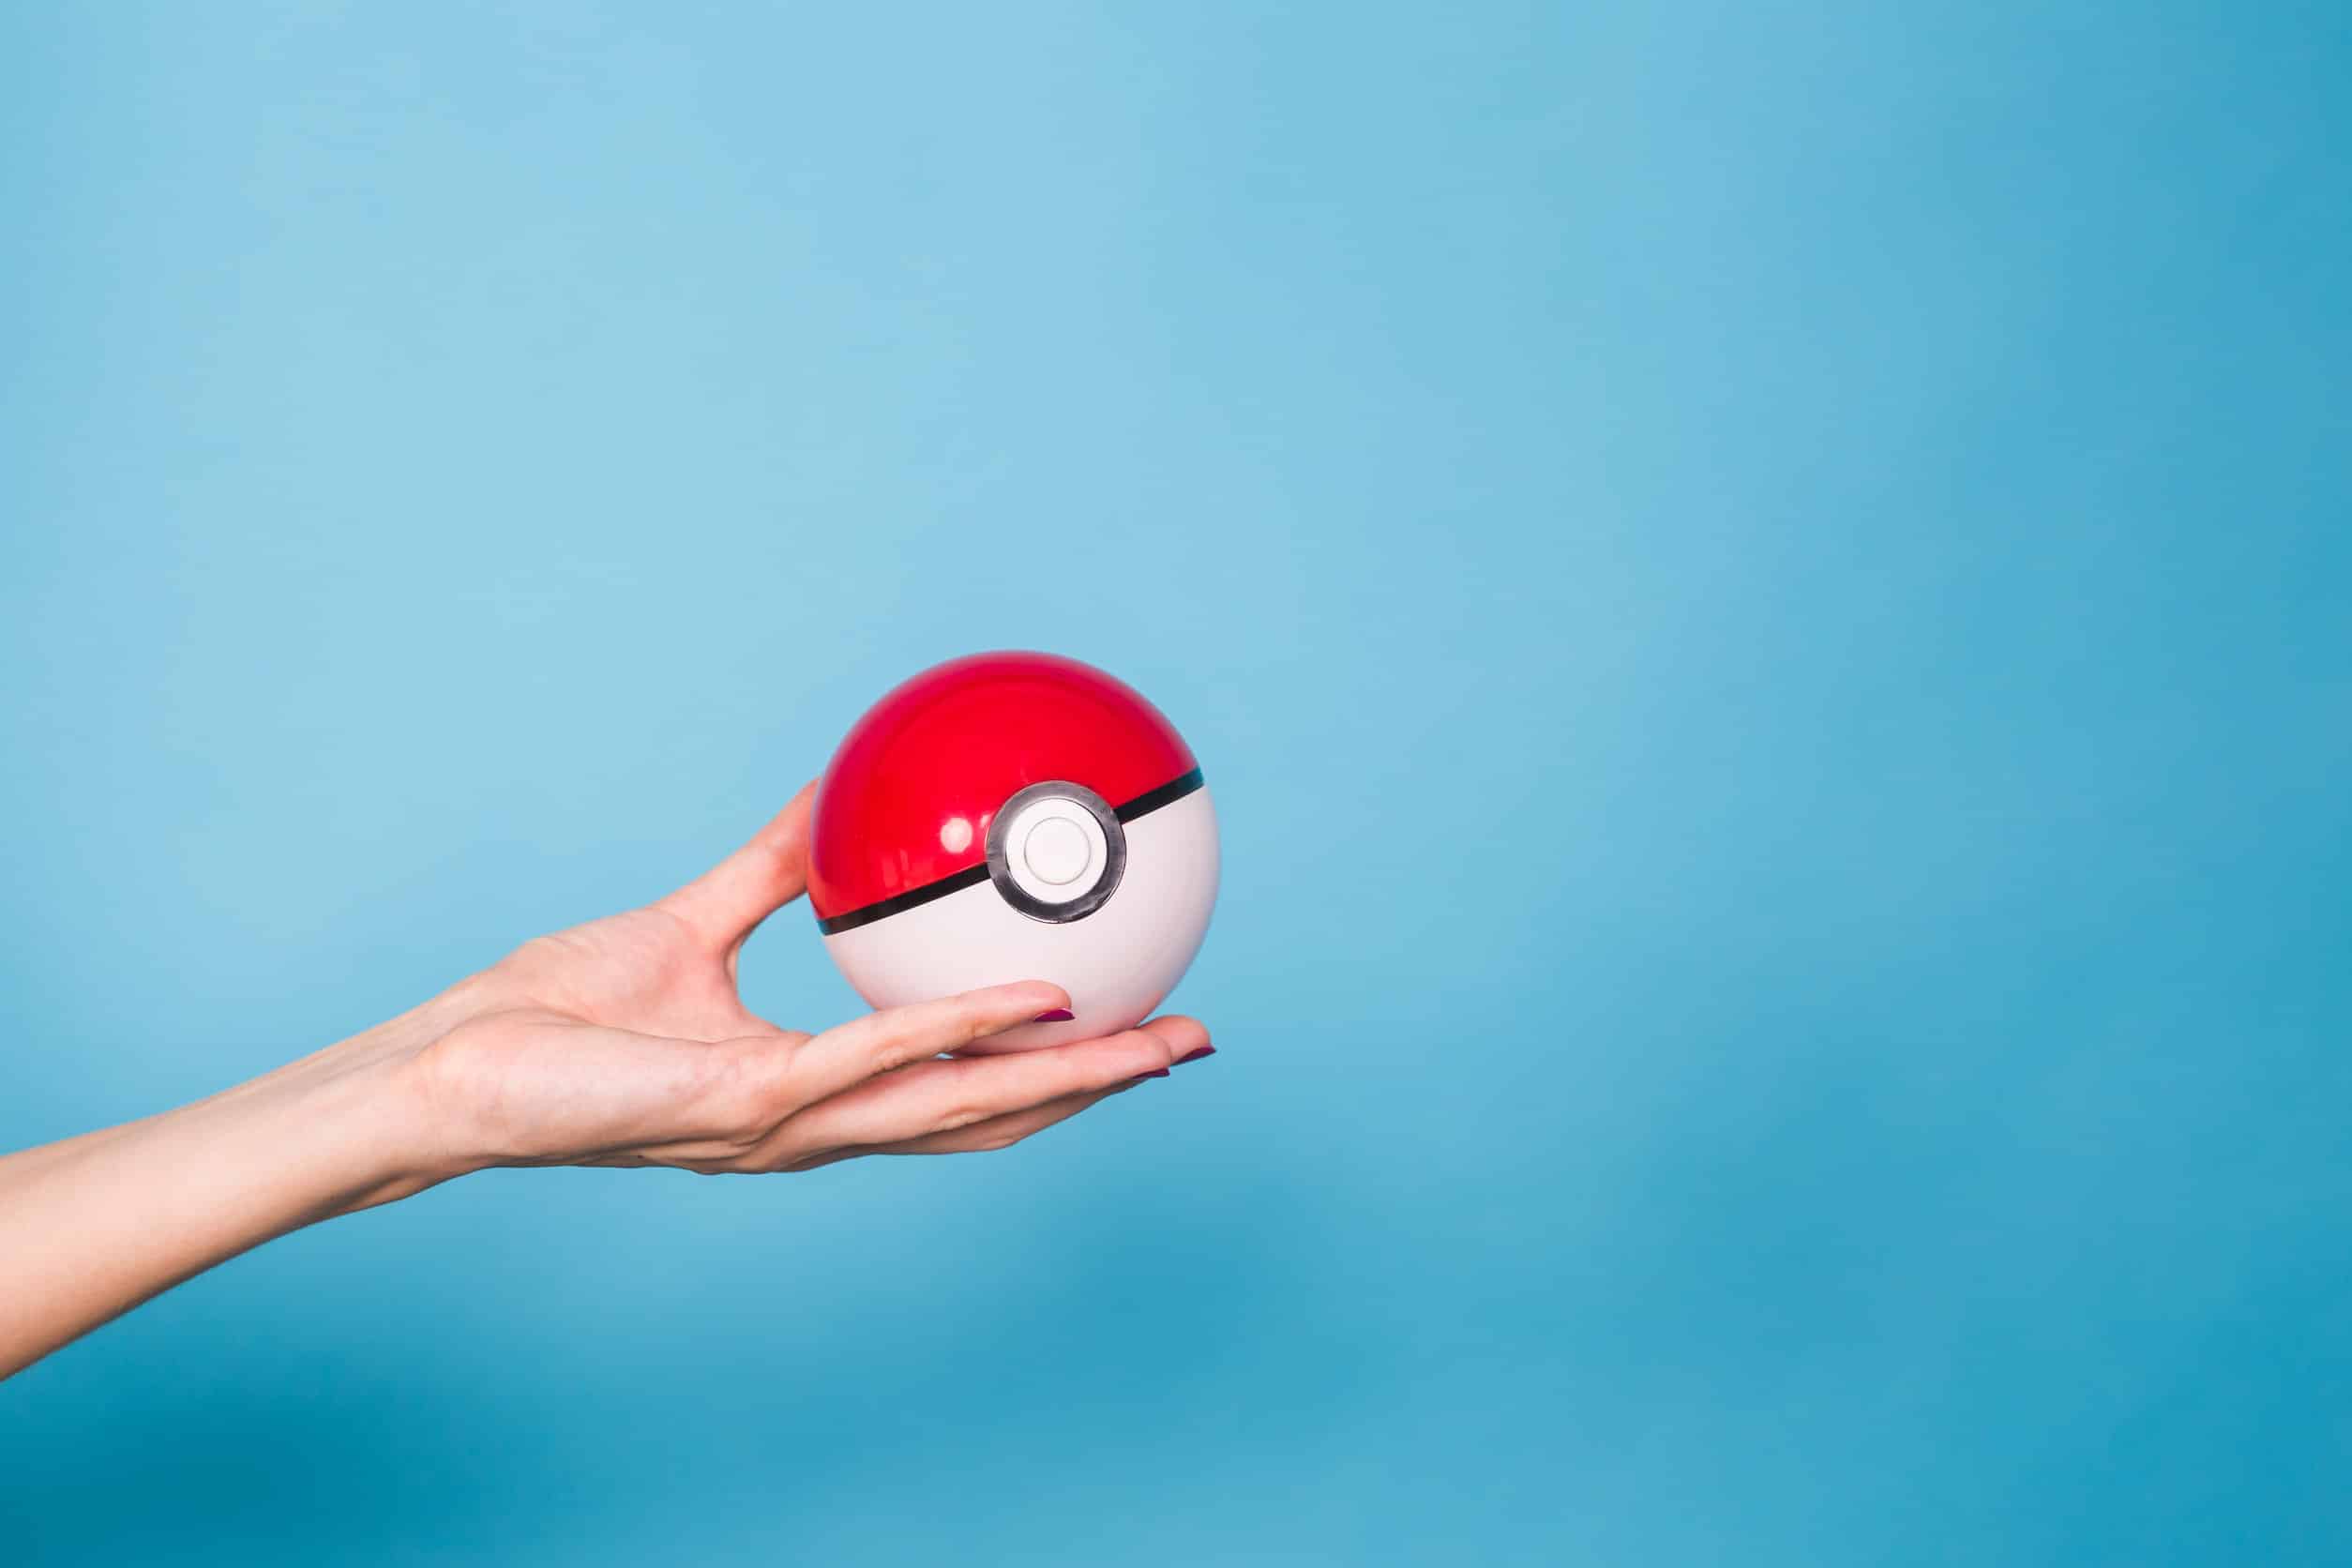 Une main tenant une pokeball de pokémon rouge et blanche sur fond bleu